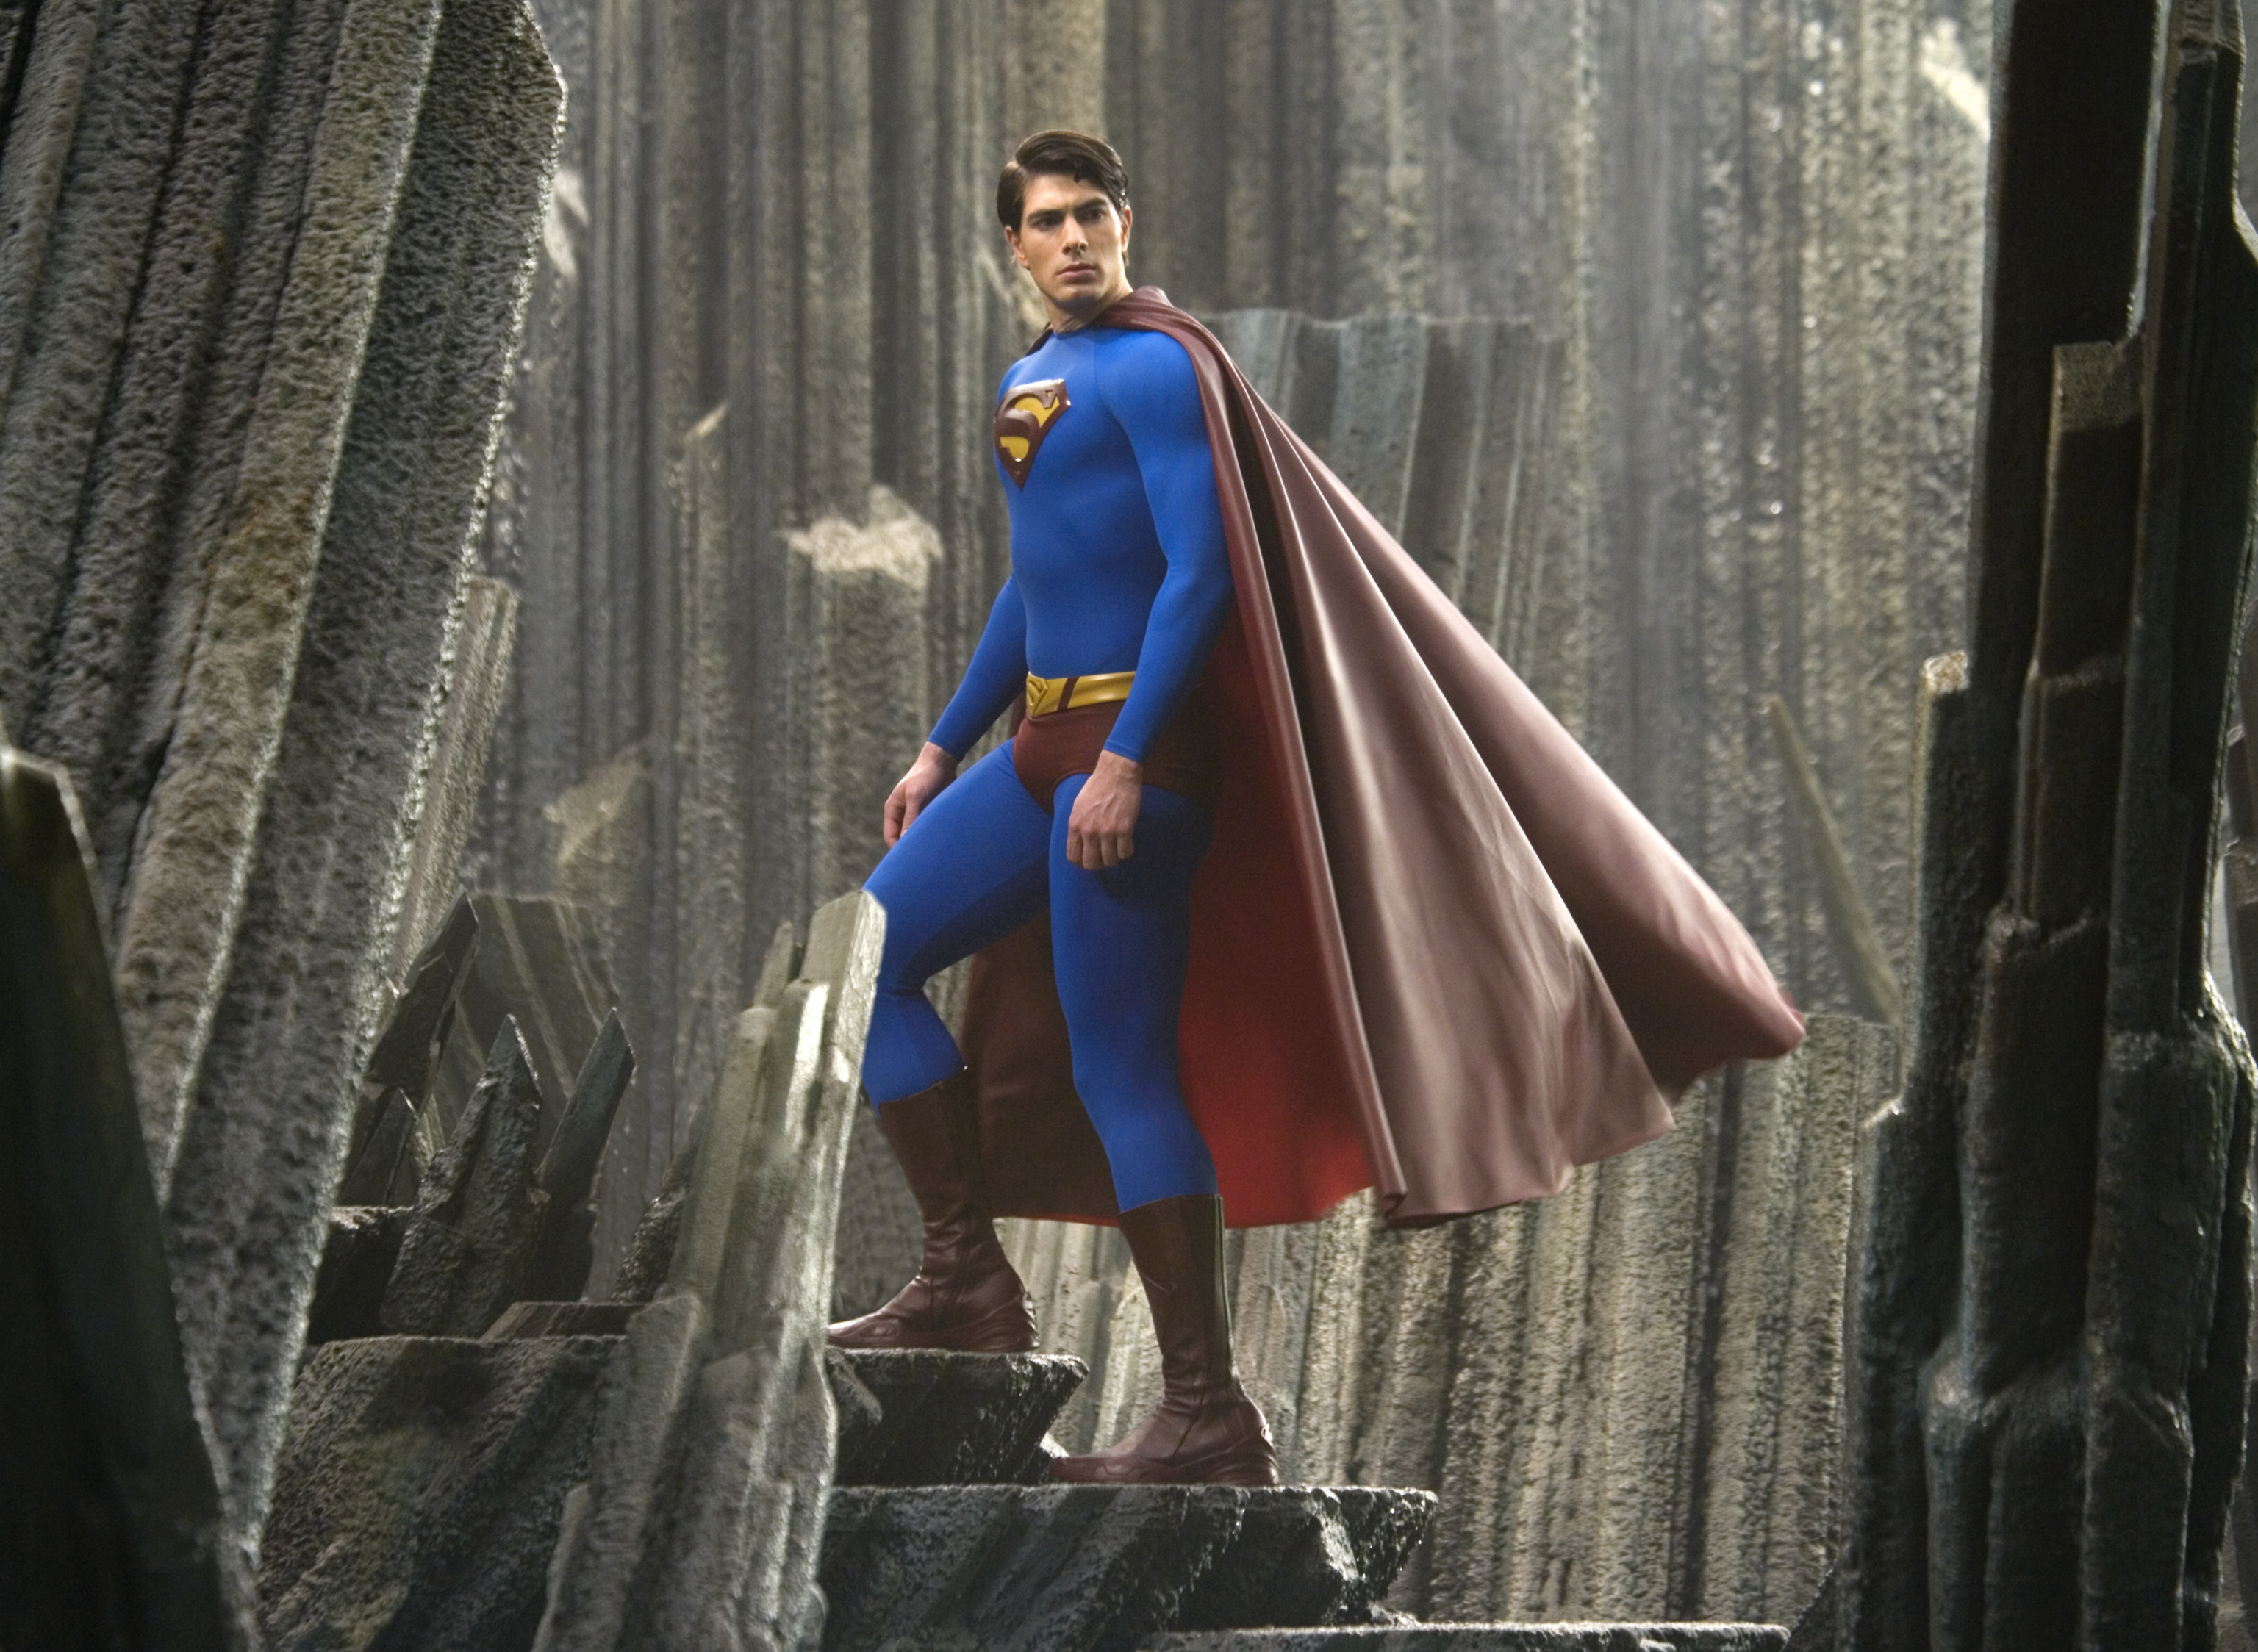 Banner Phim Siêu Nhân Trở Lại (Superman Returns)